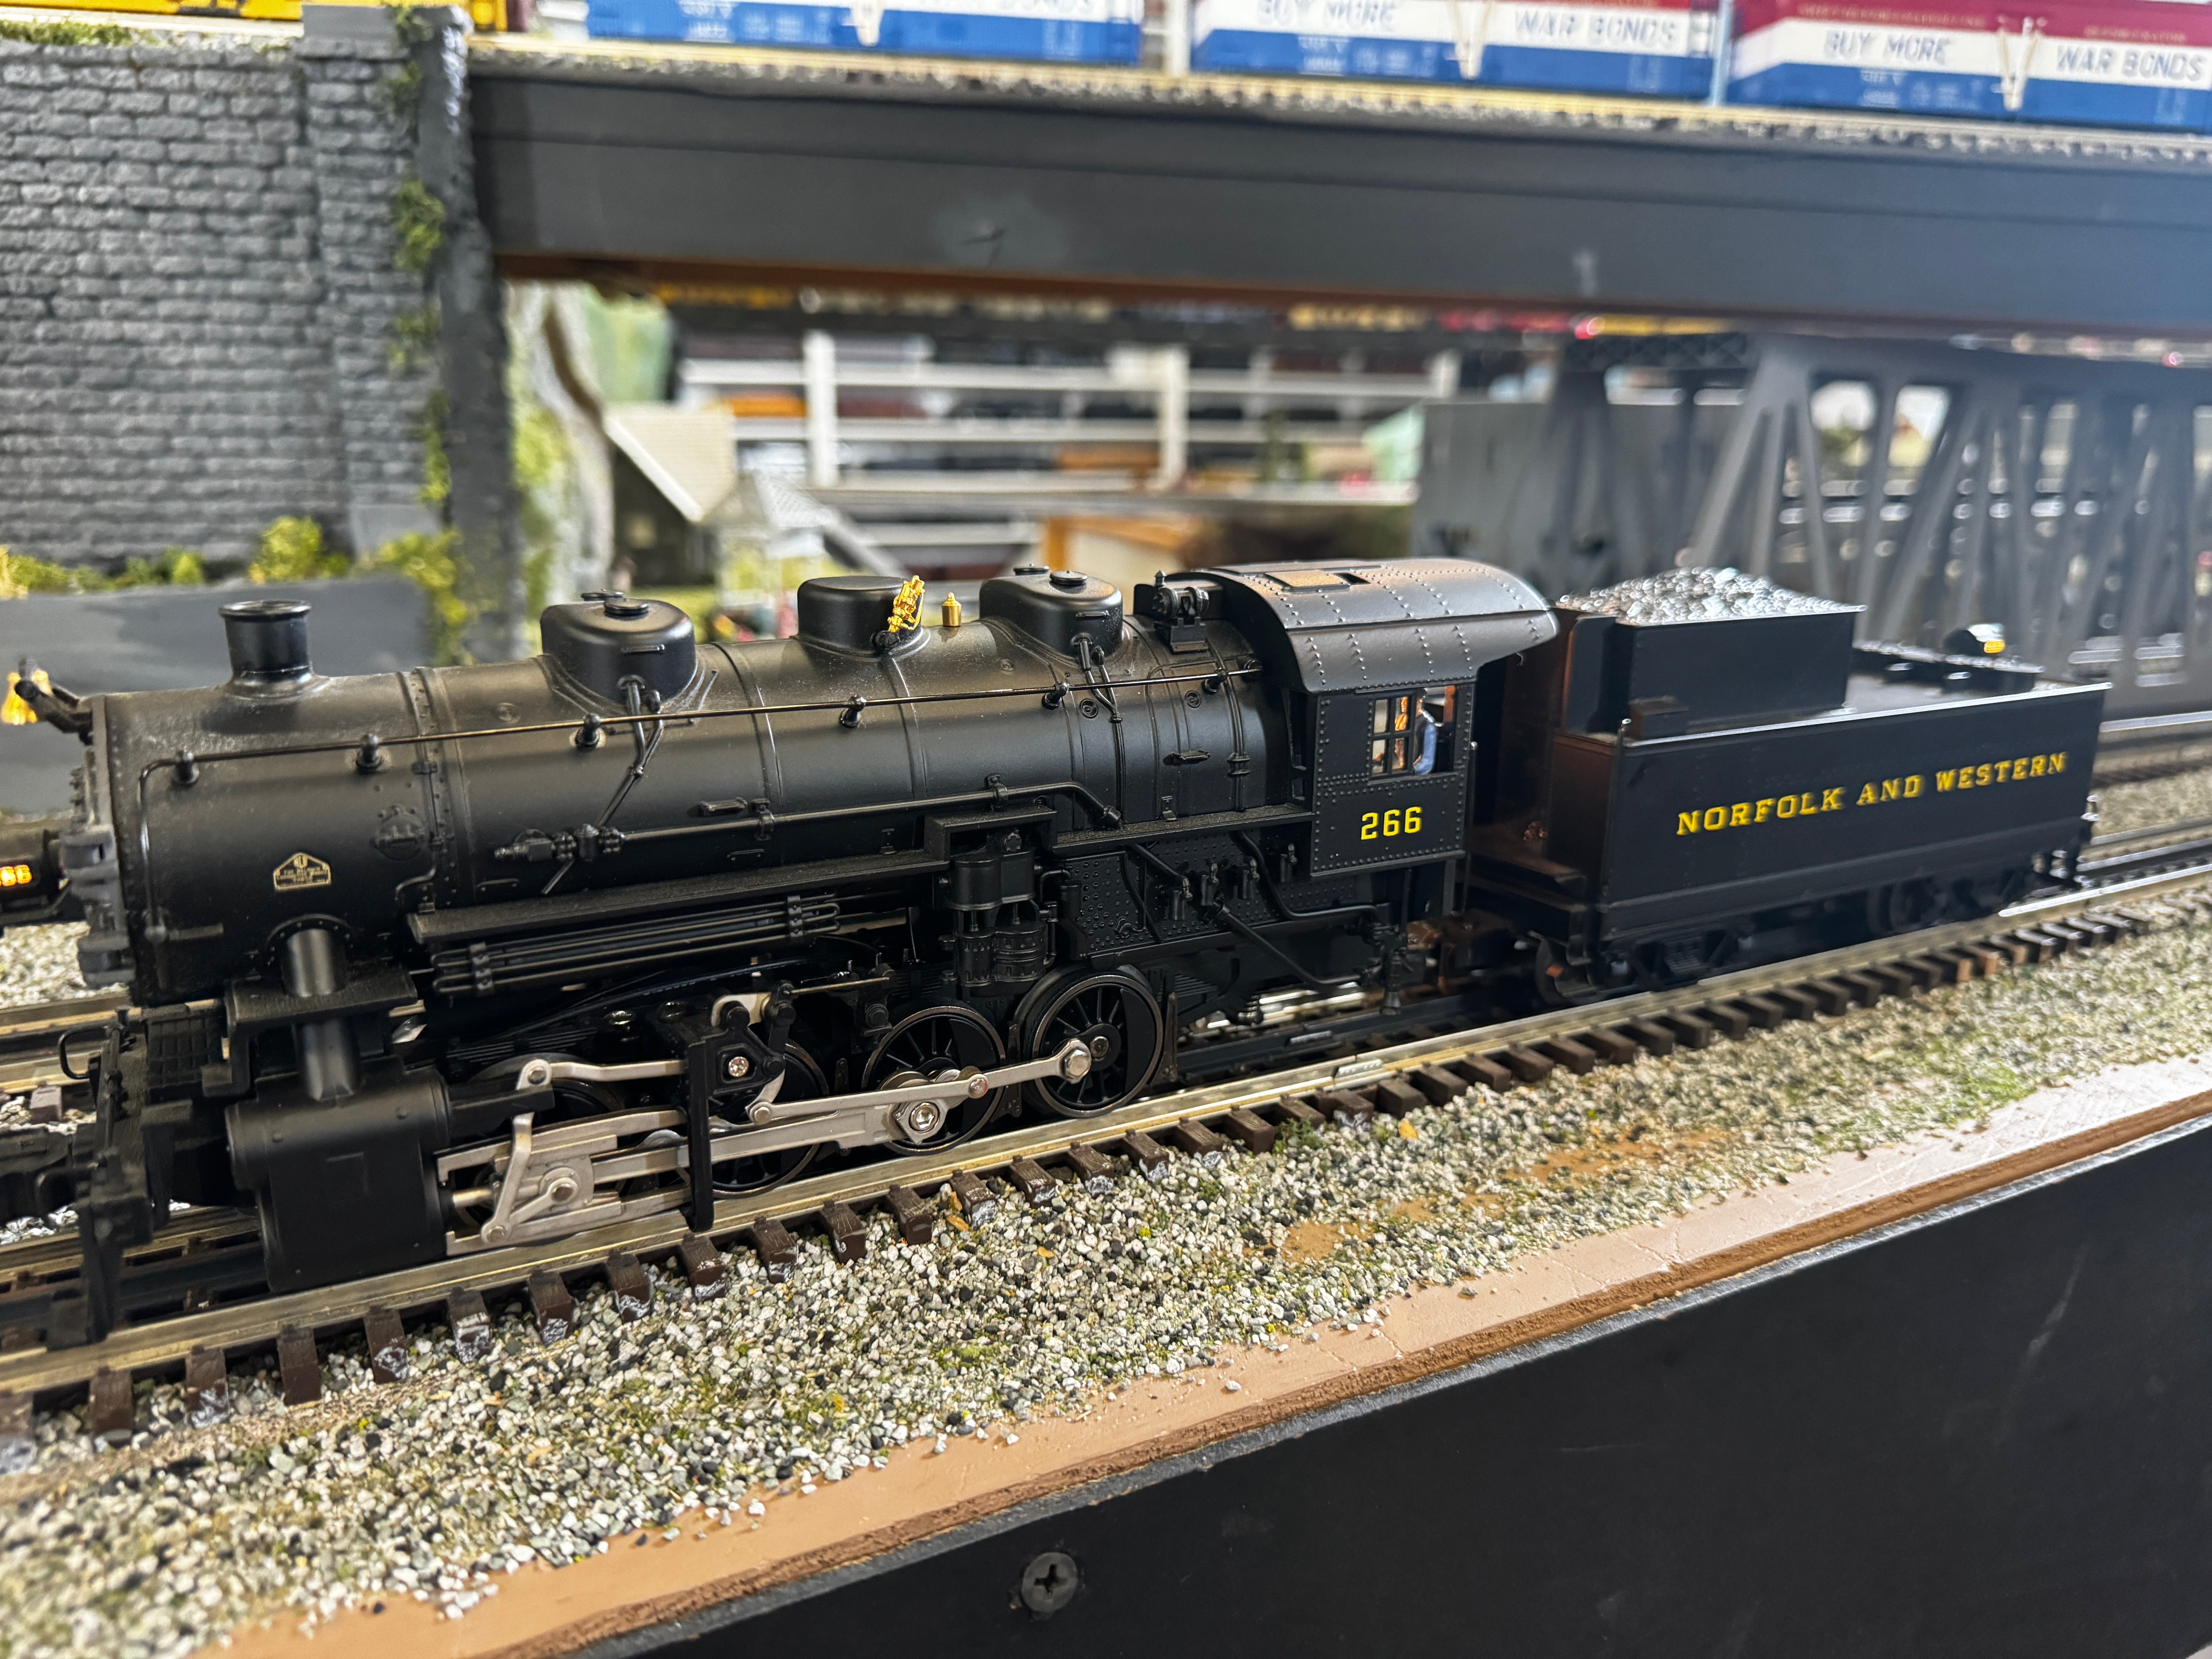 Lionel 6-38047 Norfolk & Western USRA 0-8-0 Switcher Locomotive & Tender-Second hand-M3753